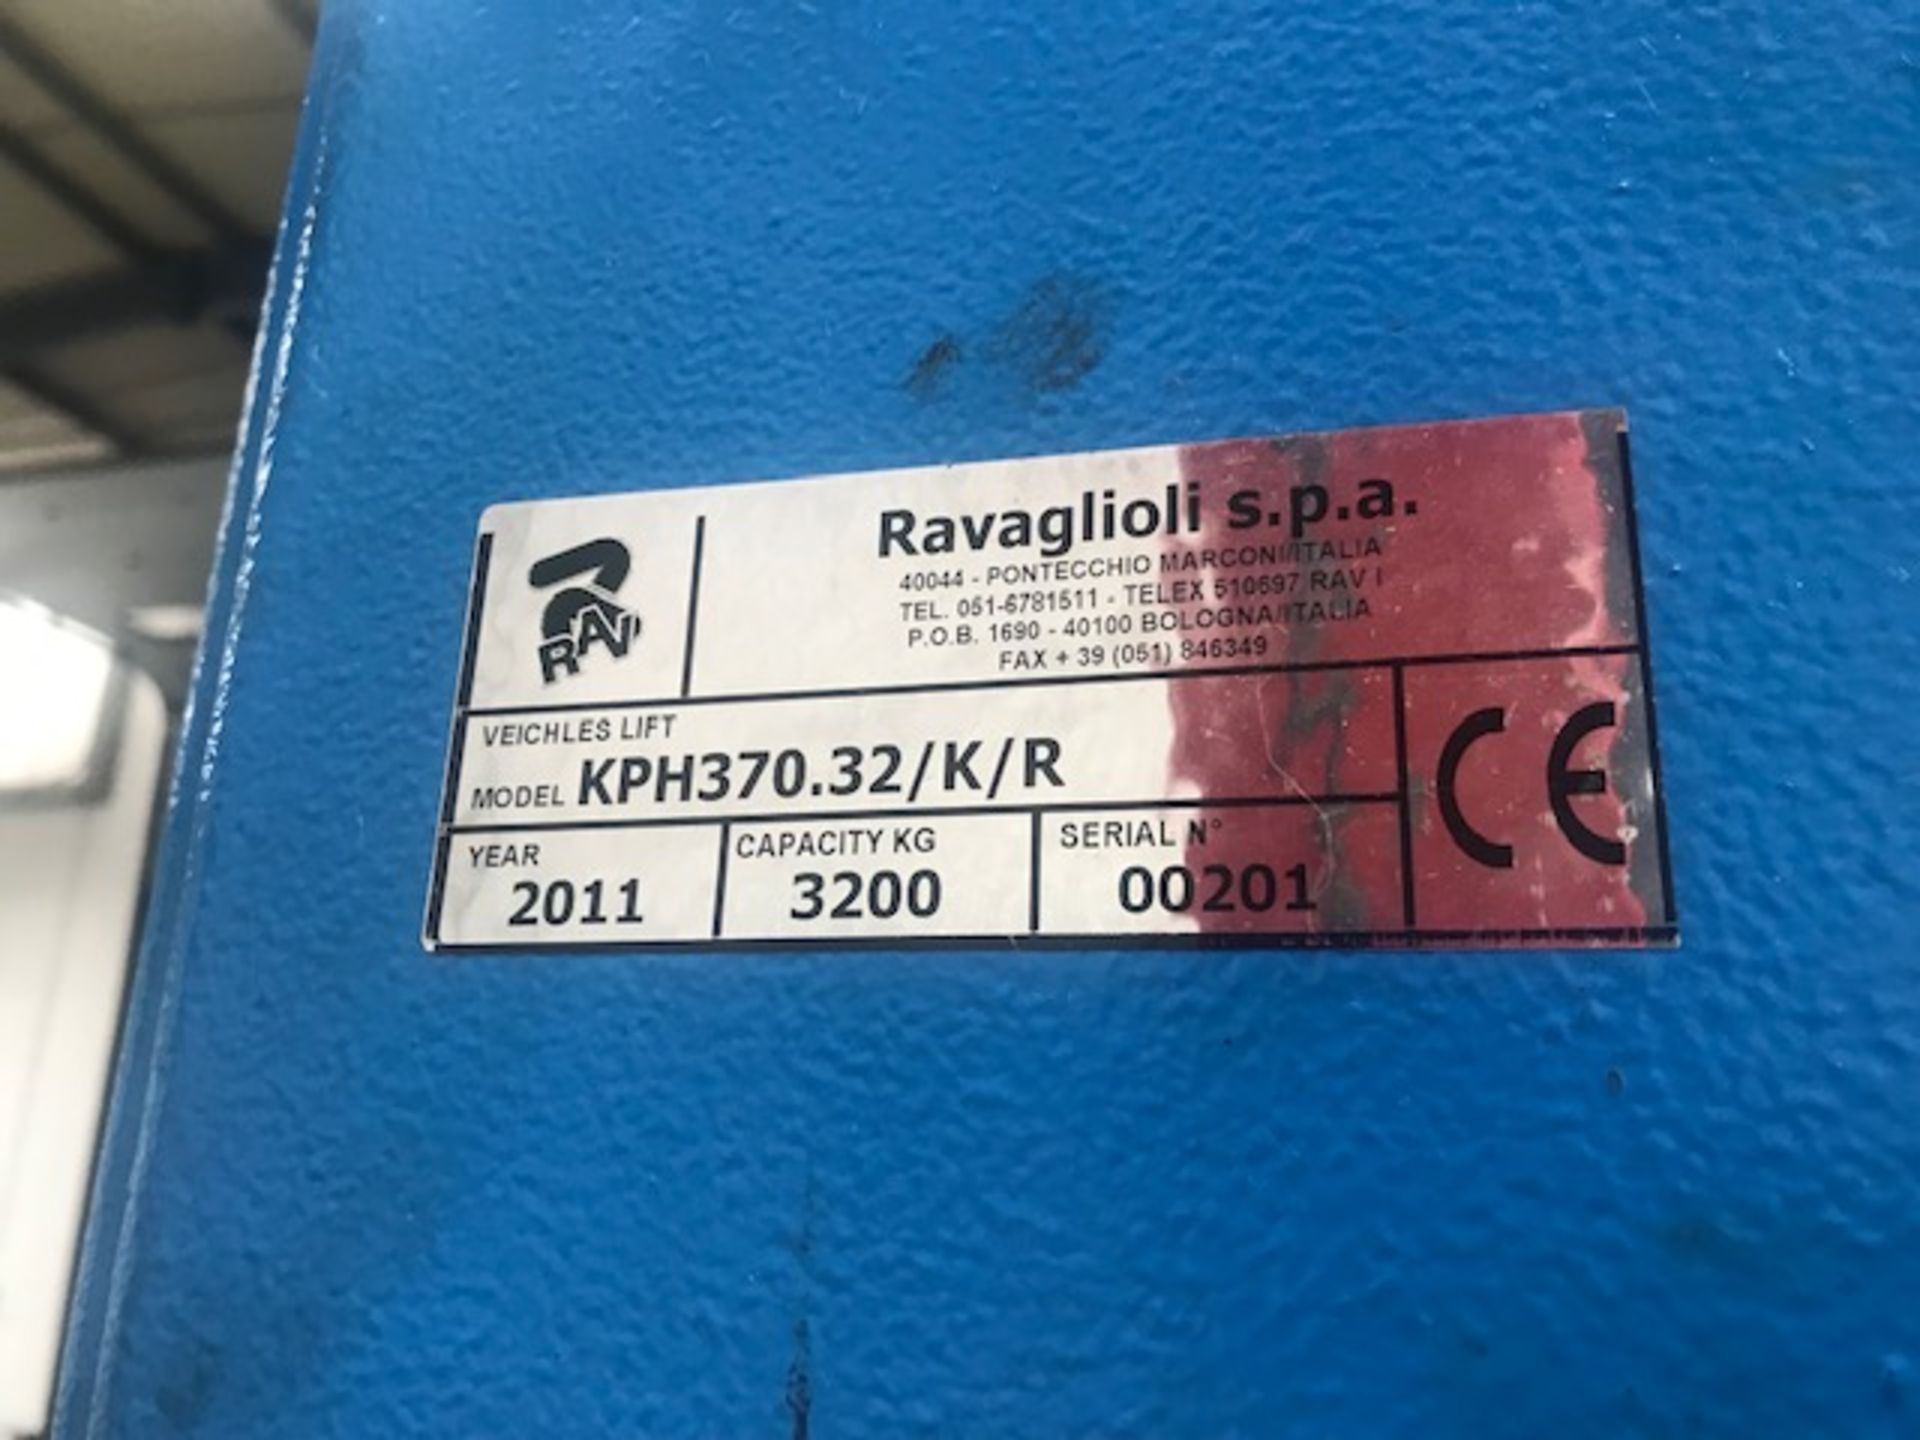 A Ravagioli s.p.a. KPH370.32/K/R SWL 3200kg Blue 2 Post Car Lift, YOM 2011, sn. - Image 7 of 7